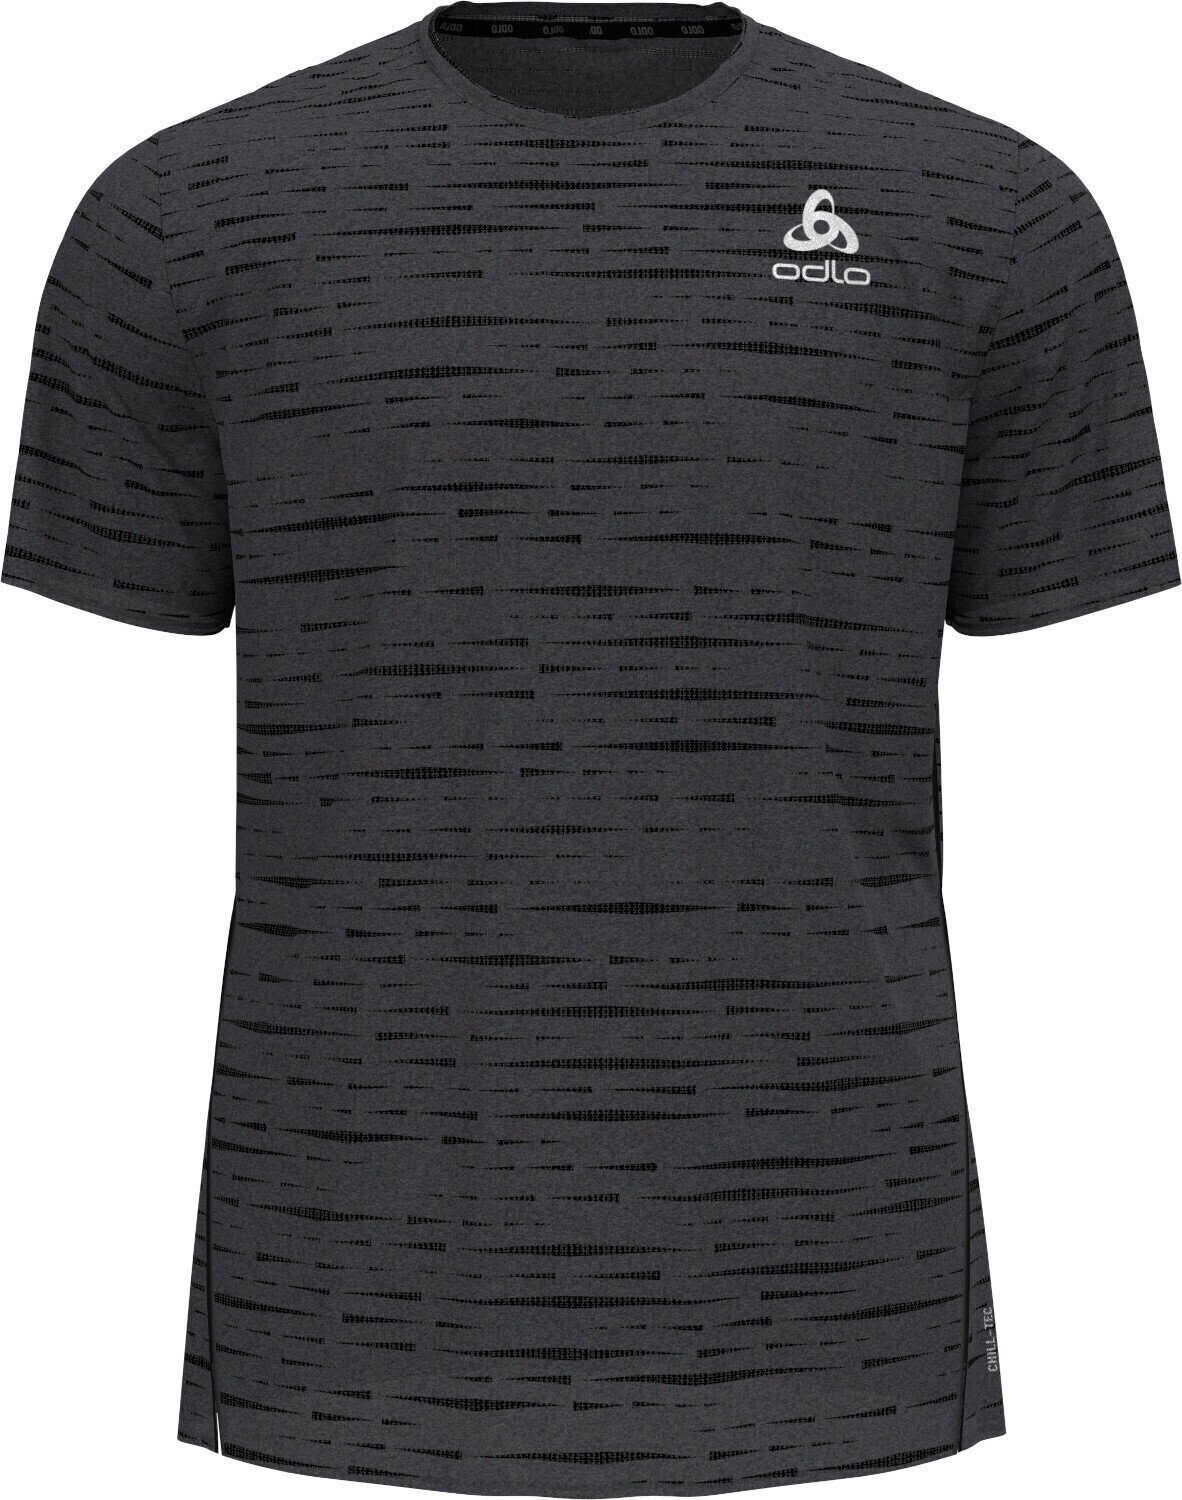 Běžecké tričko s krátkým rukávem
 Odlo Zeroweight Engineered Chill-Tec T-Shirt Black Melange XL Běžecké tričko s krátkým rukávem